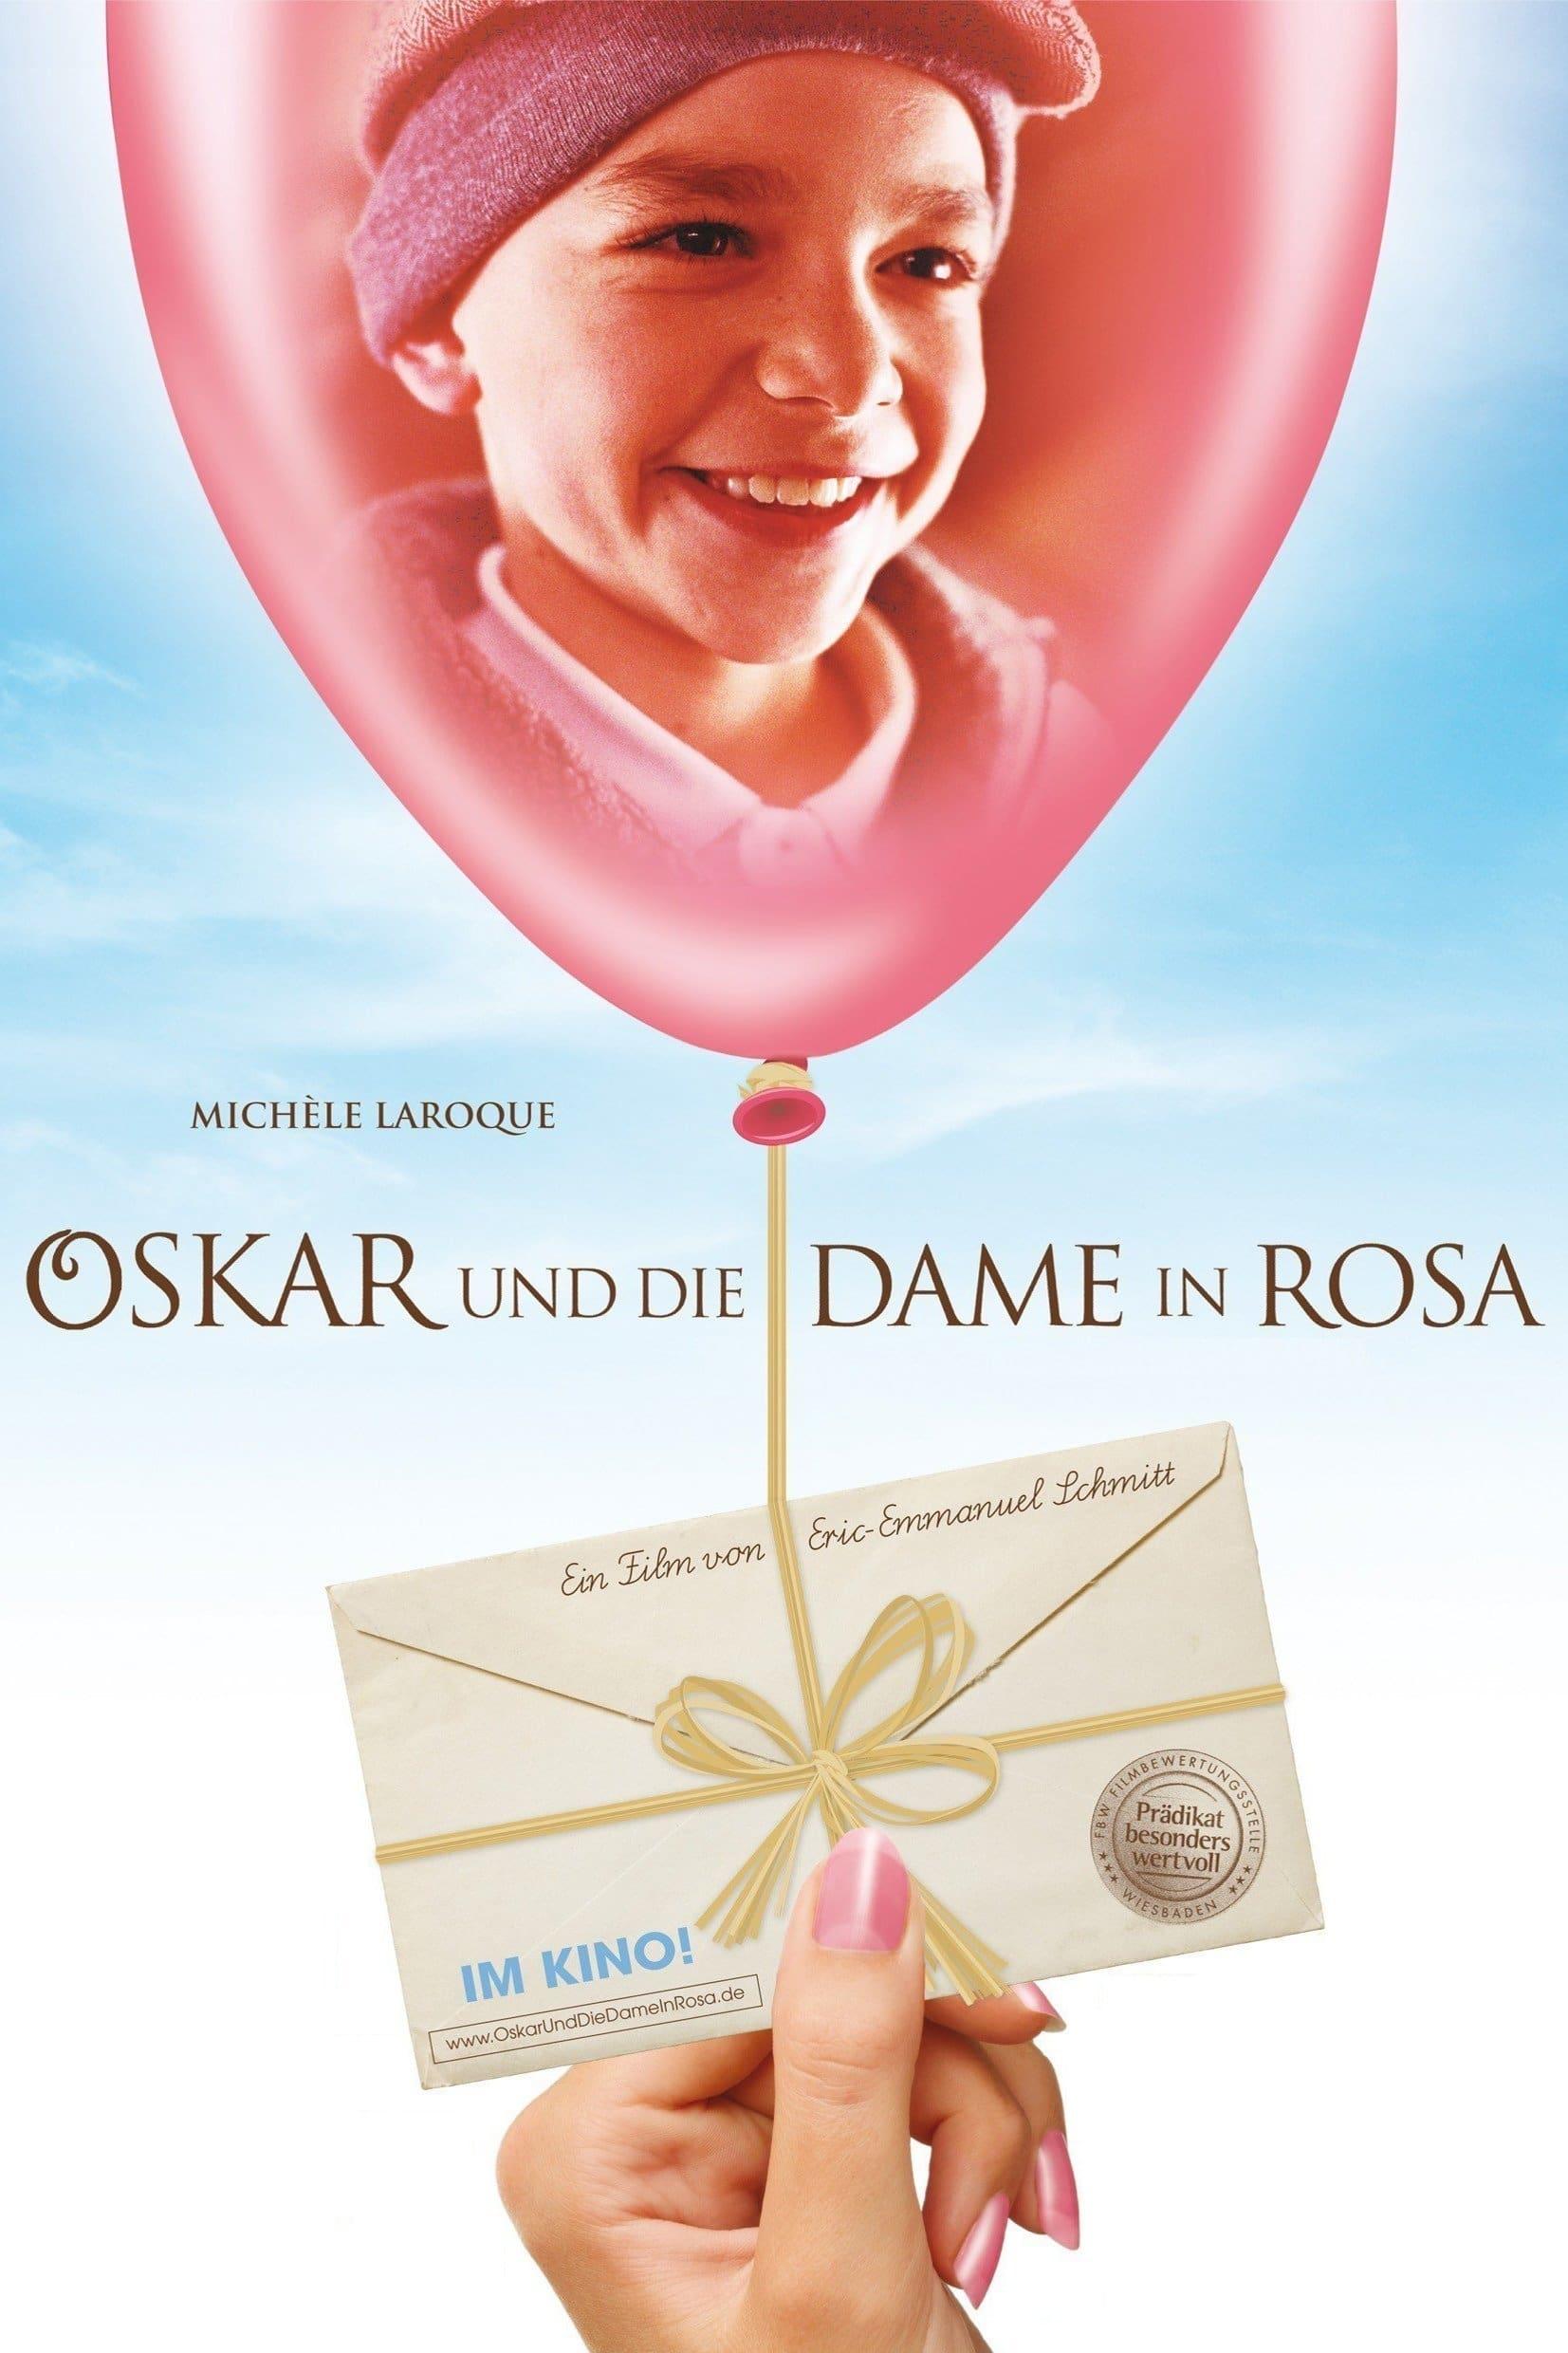 Oskar und die Dame in Rosa poster